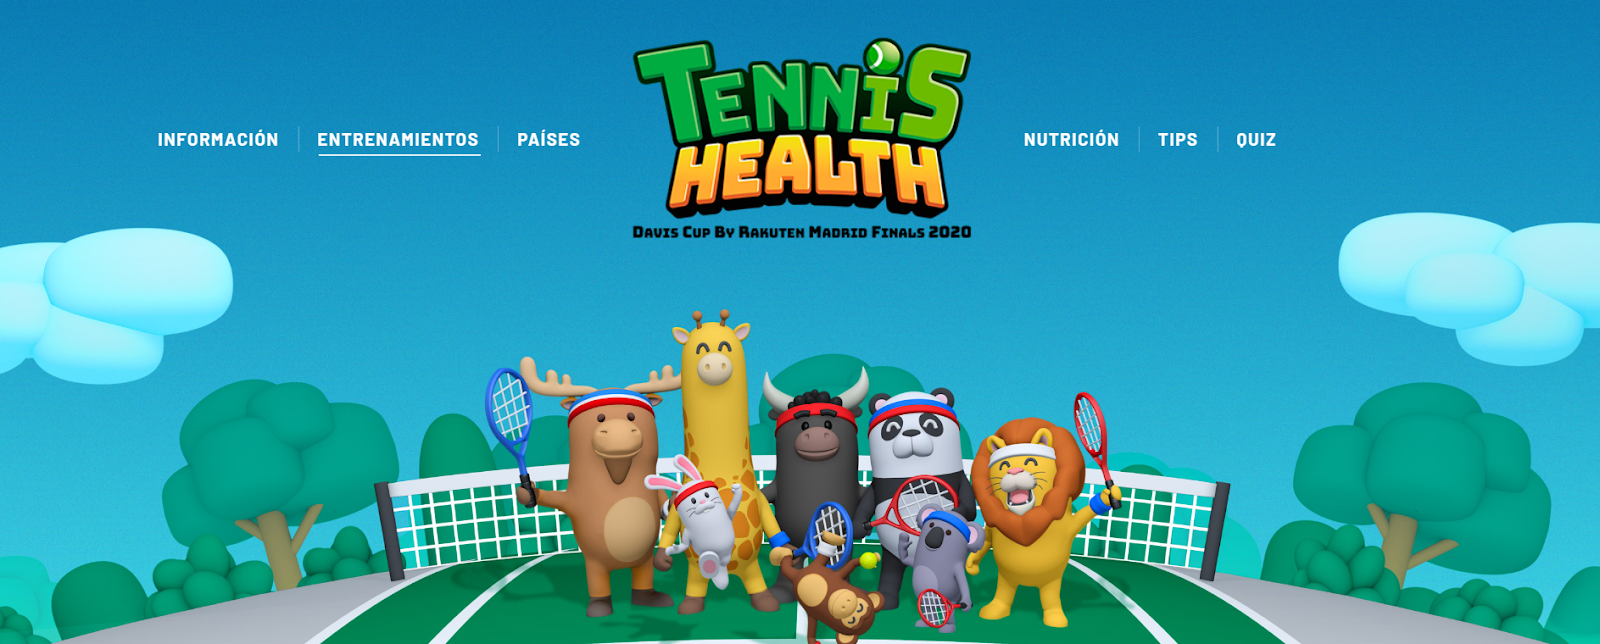 Tennis-Health